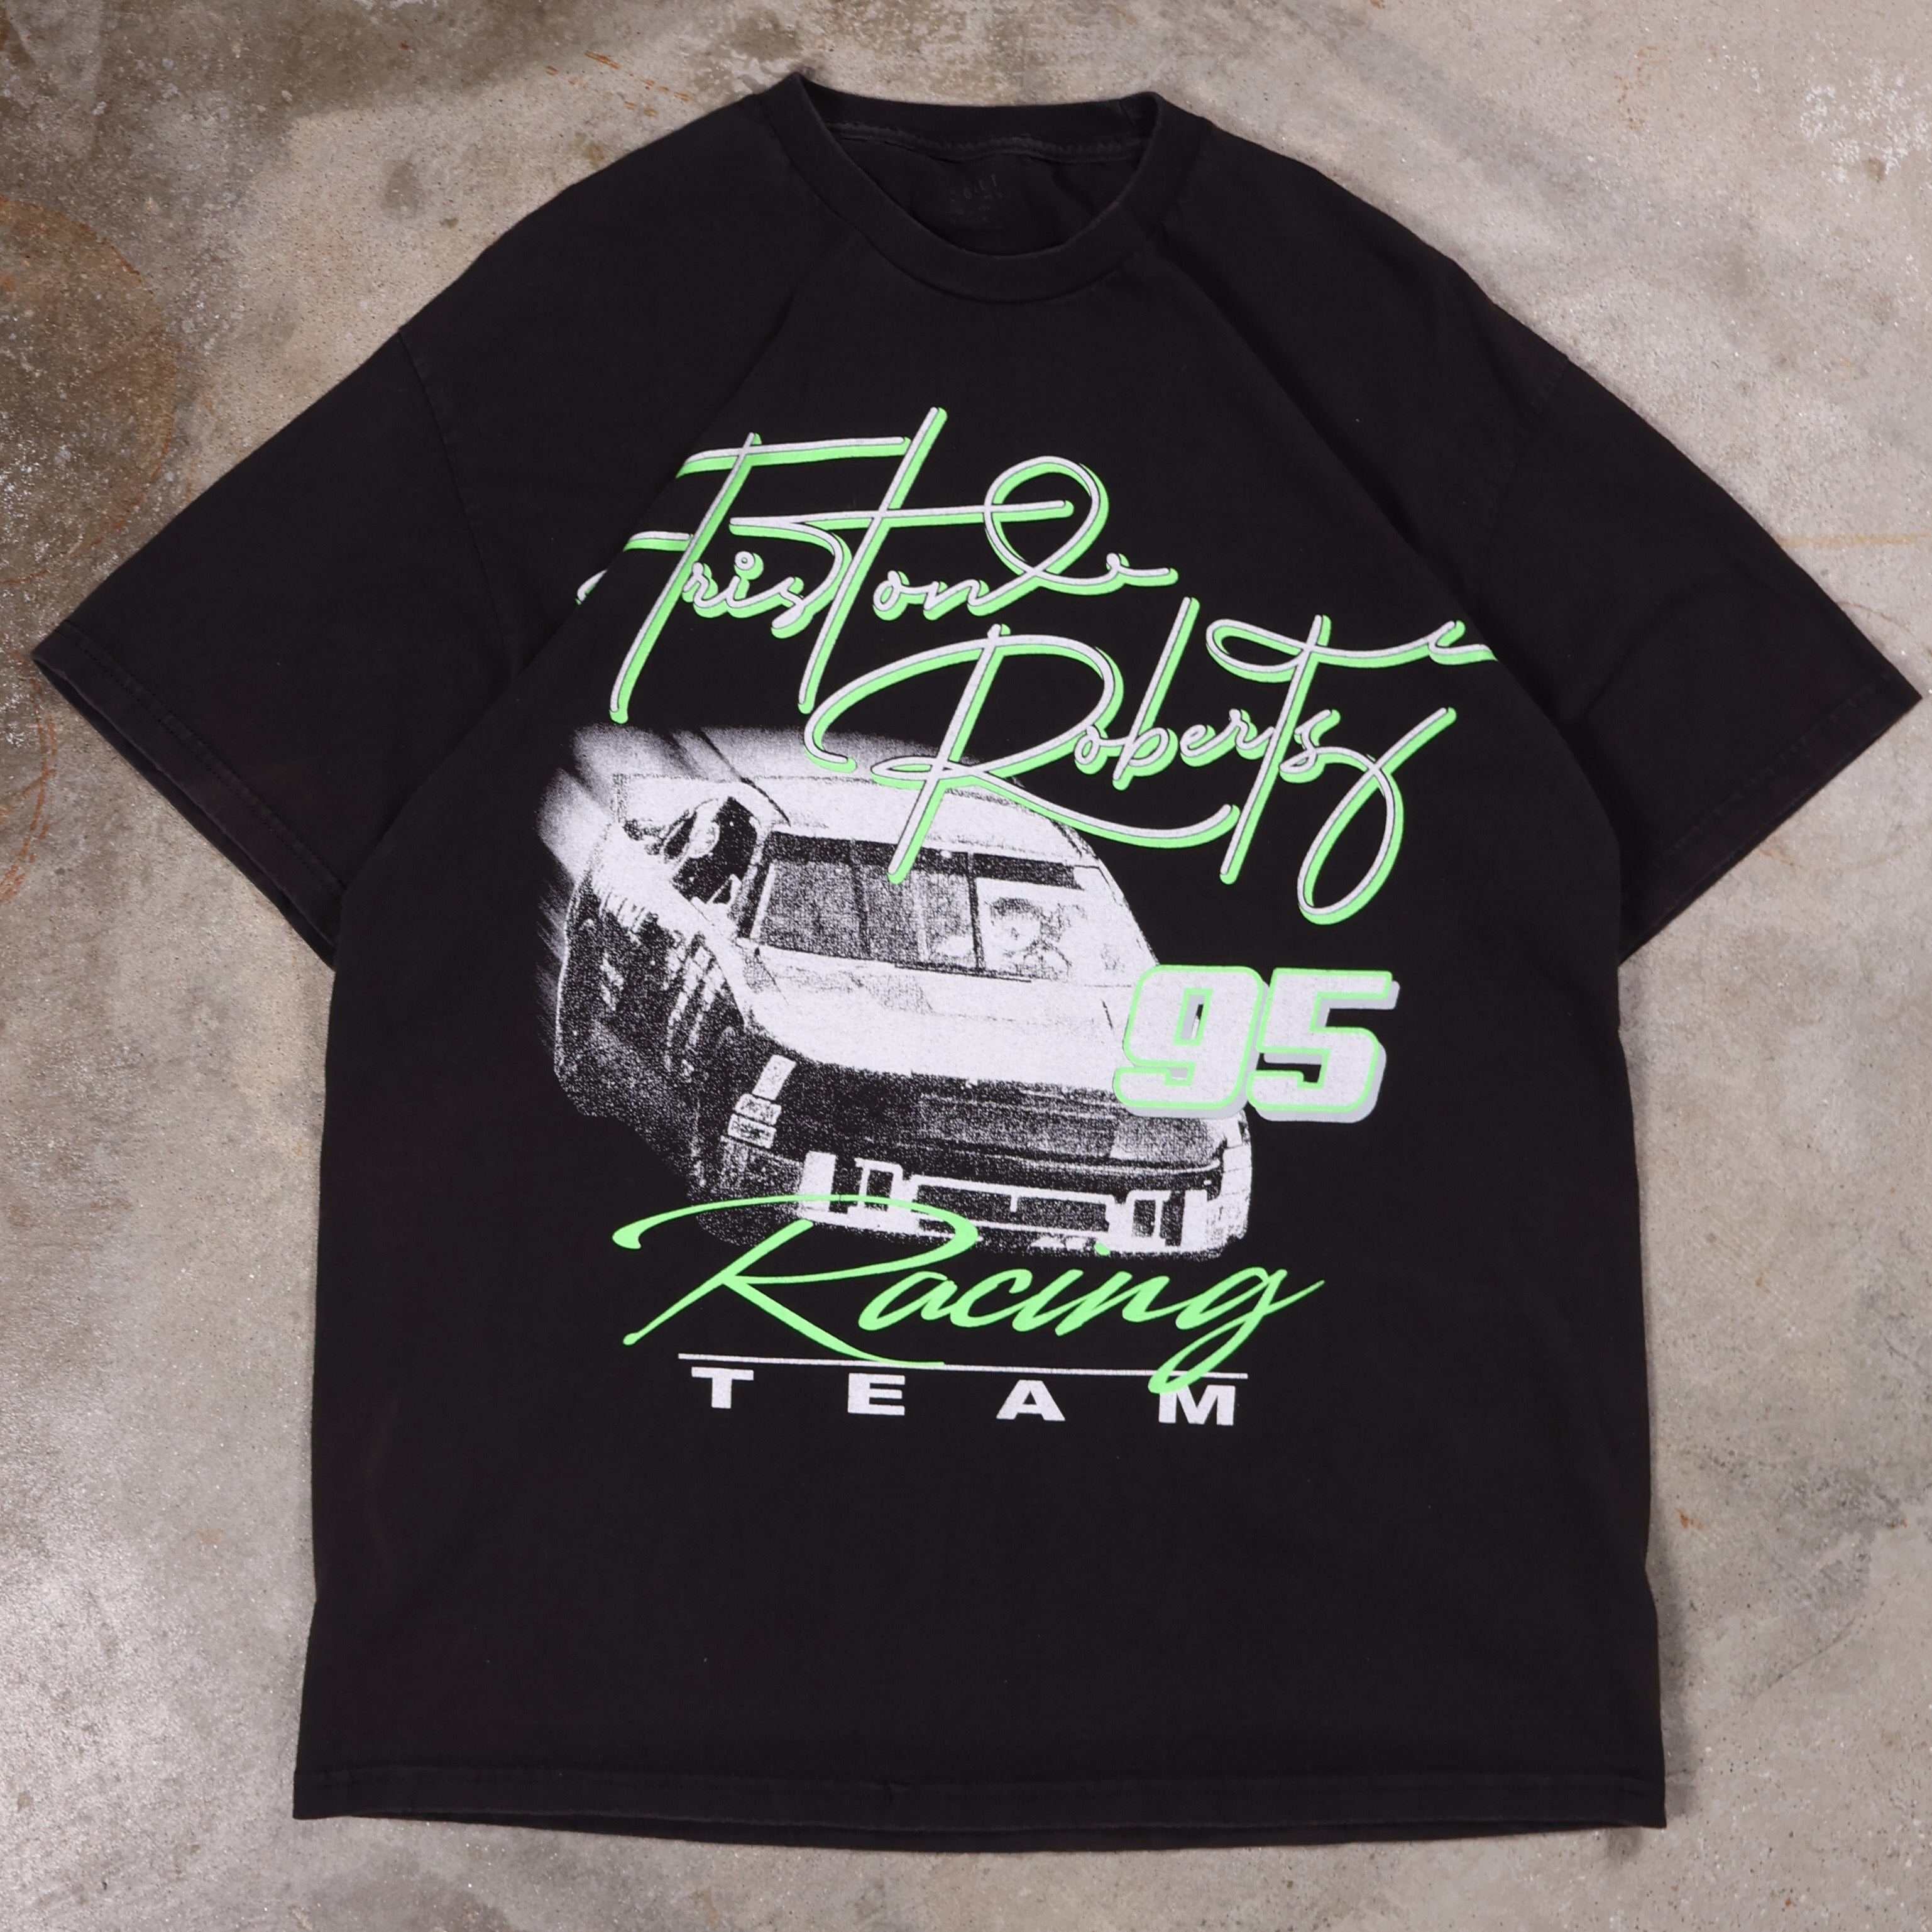 Triston Roberts Racing Team T-Shirt (XL)